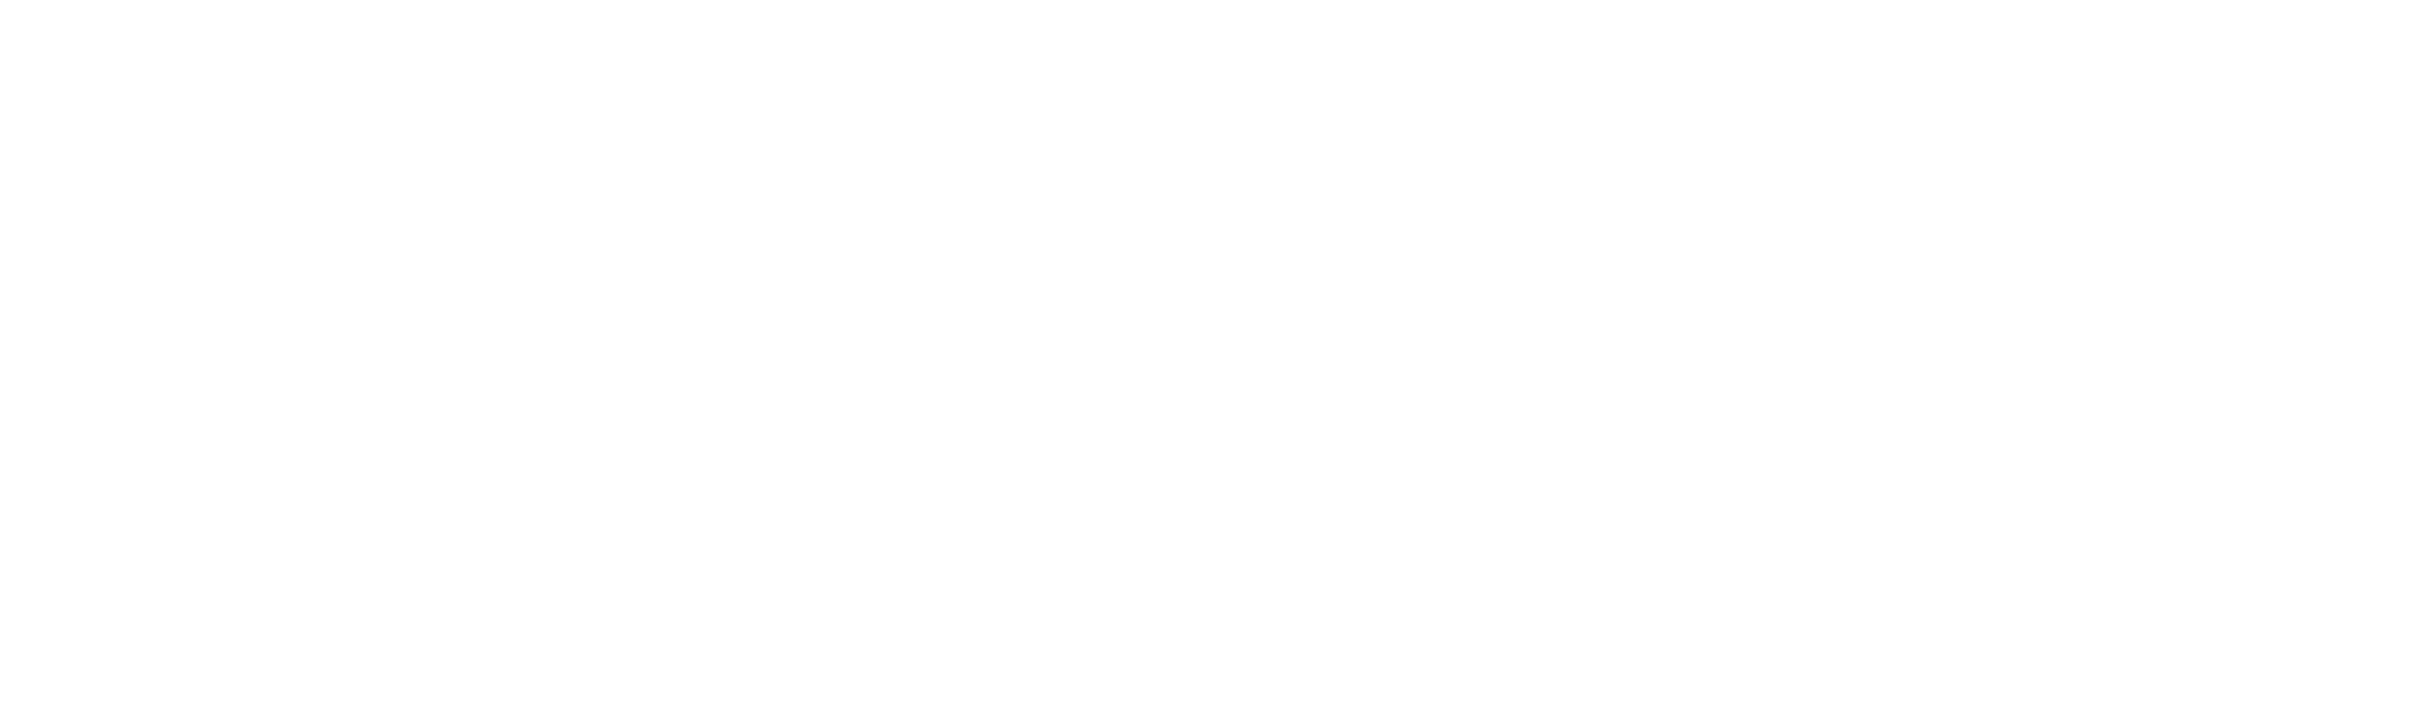 logo confindustria alto milanese